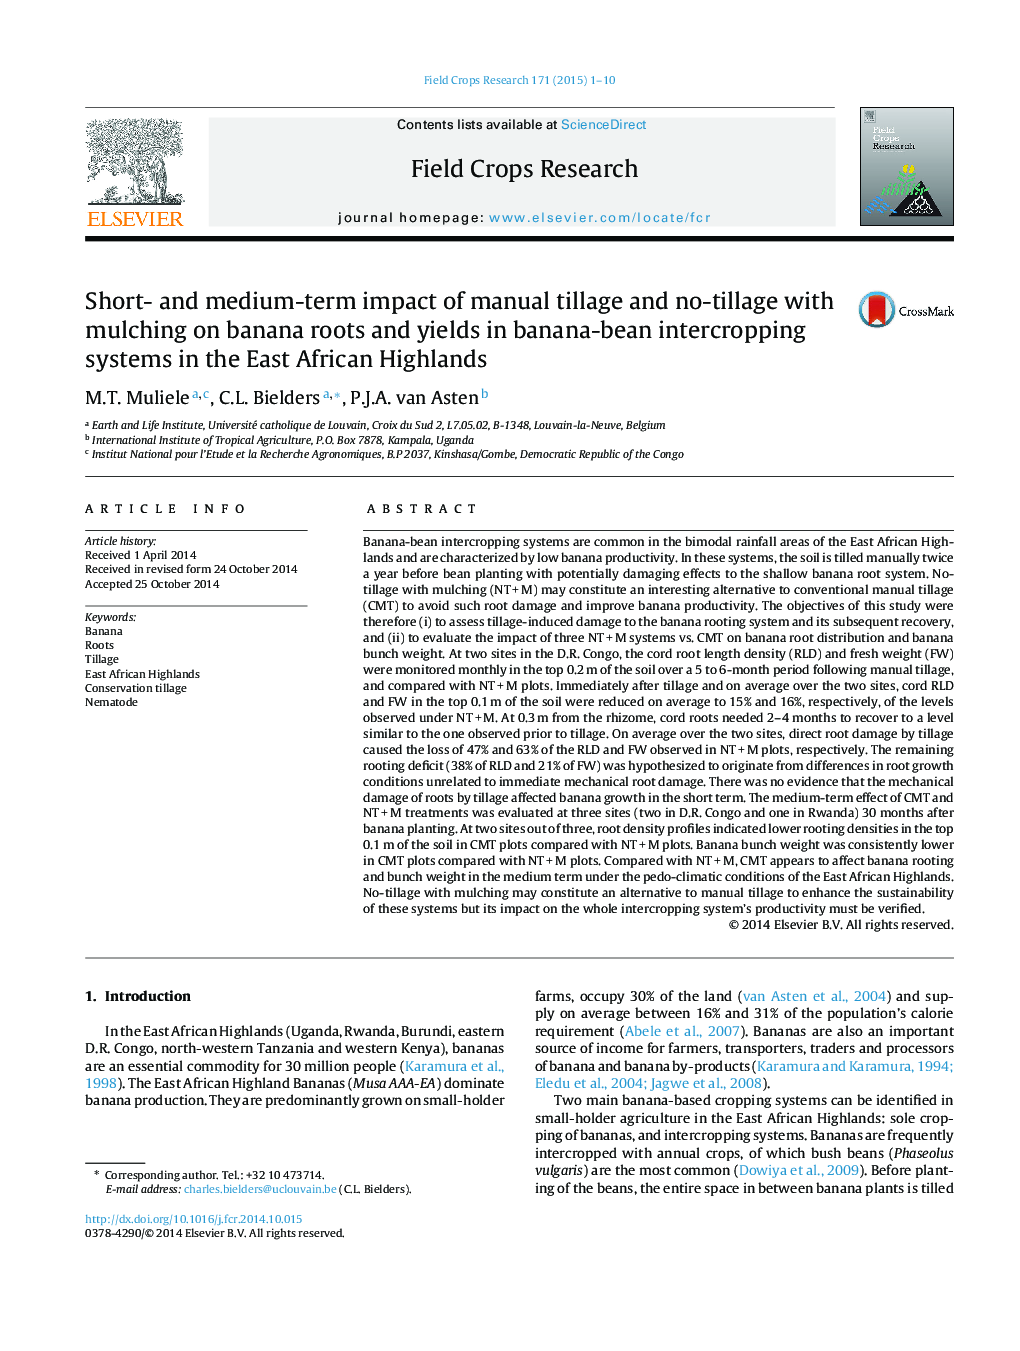 تأثیر کوتاه مدت و بلندمدت بر عملکرد خاکی بدون خاکورزی و مالچ شدن بر ریشه های موز و عملکرد در سیستم های کشت مخلوط موز در مناطق مرتفع آفریقایی 